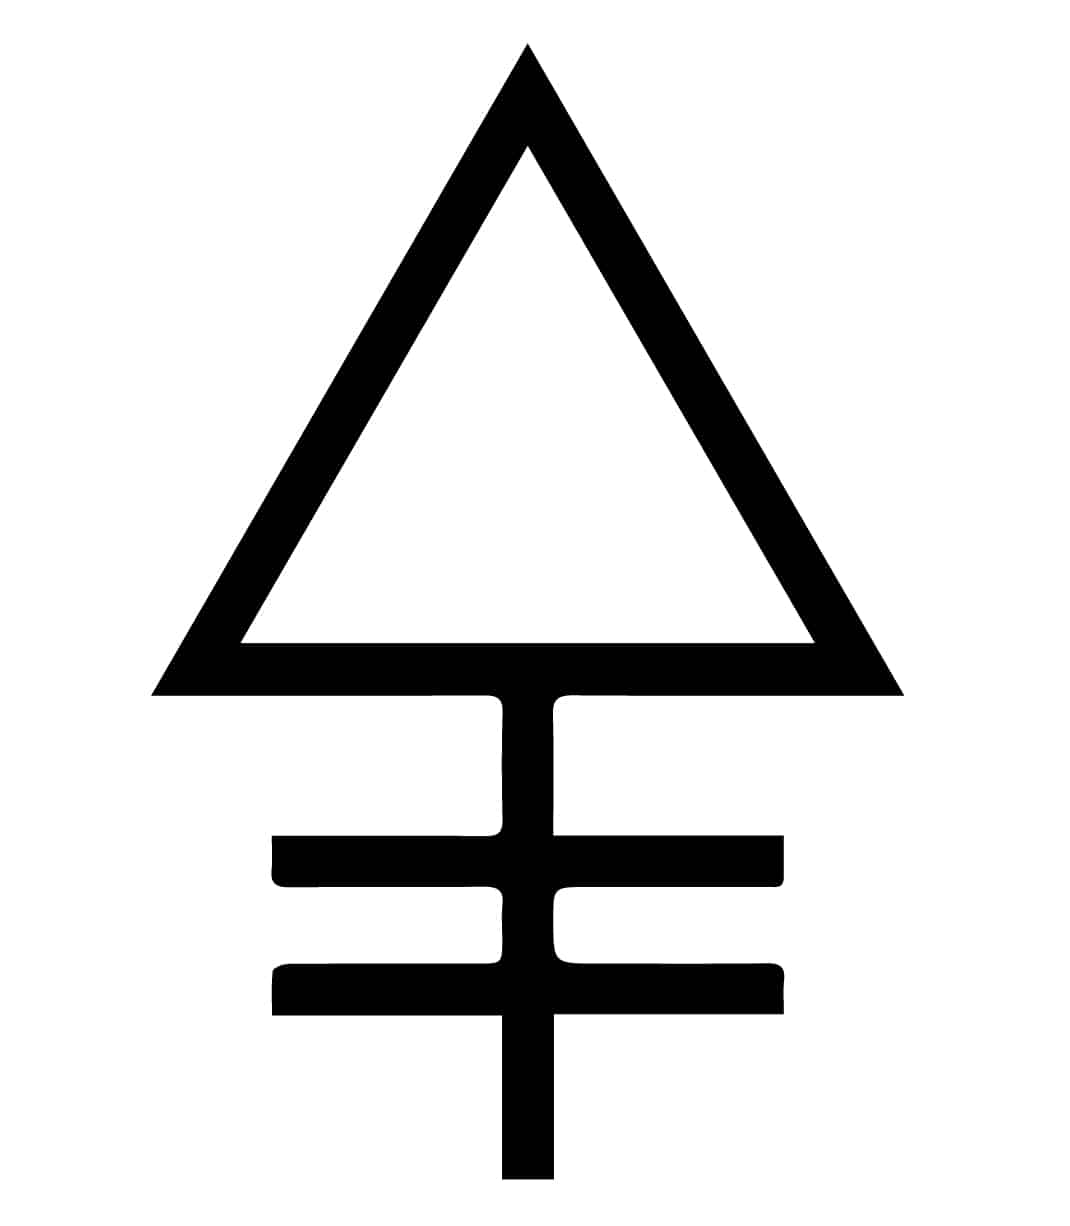 Symboles alchimiques et leurs significations - La liste étendue des symboles alchimiques